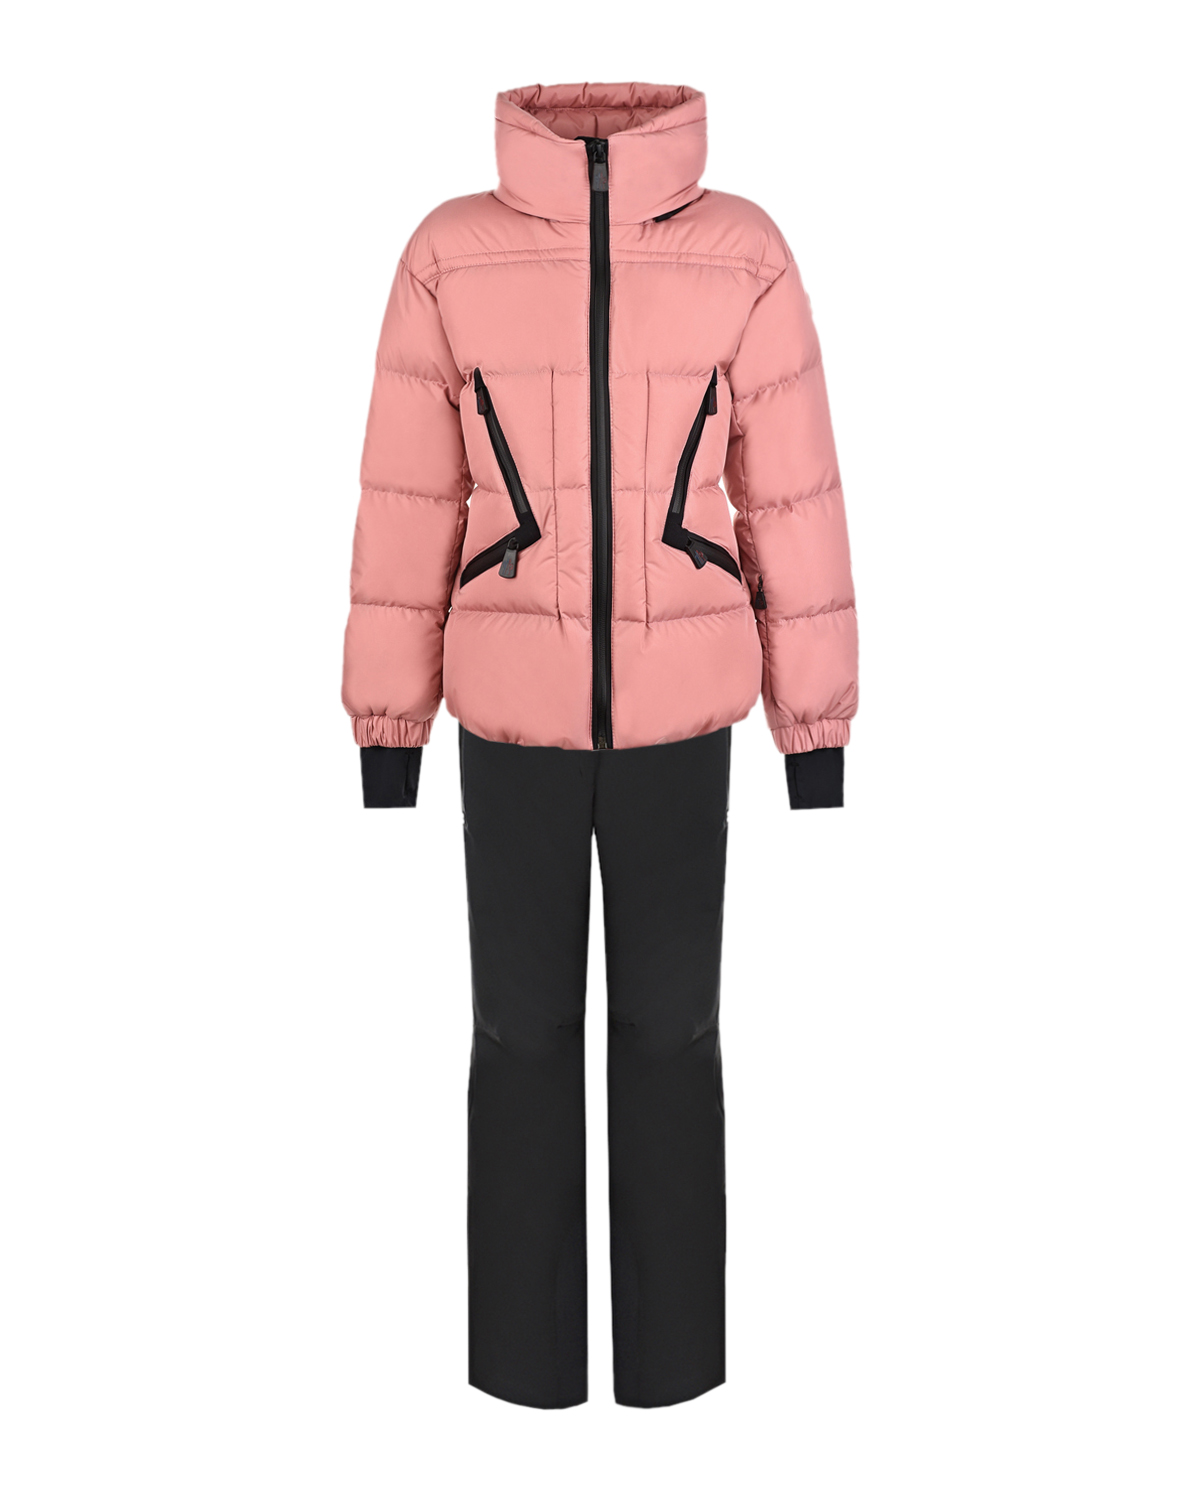 Комплект Grenoble для девочек (куртка и полукомбинезон) Moncler